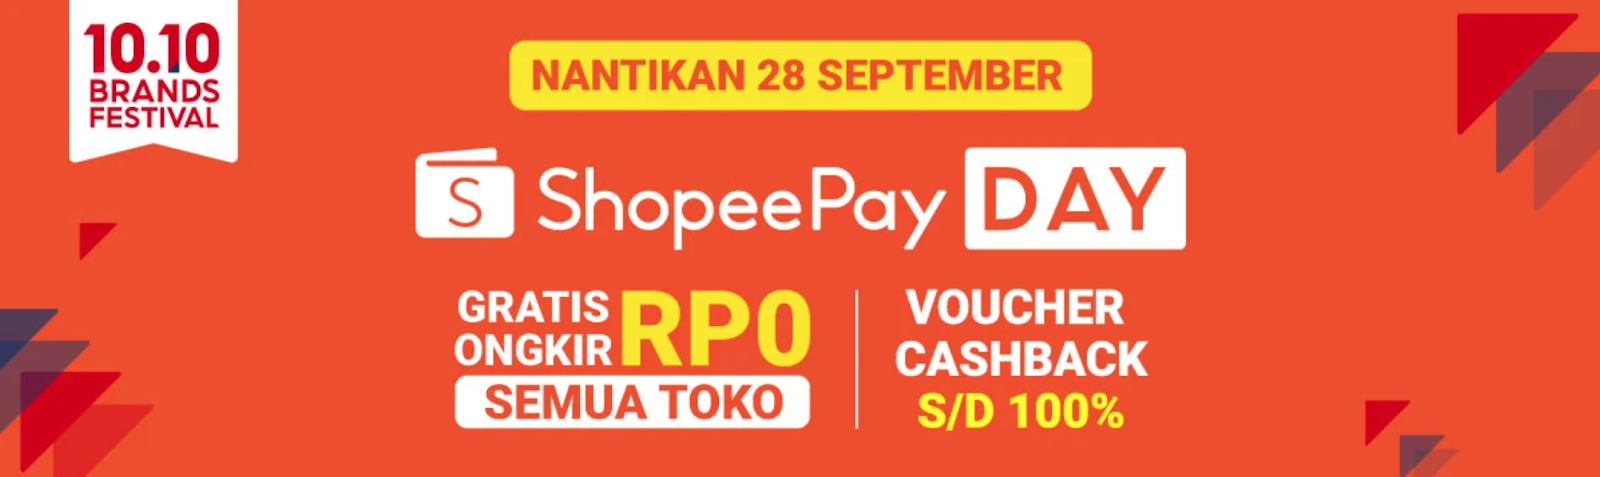 ShopeePay Day Kembali Digelar 28 September, Ajak Masyarakat Belanja Lebih Efektif dan Hemat 1